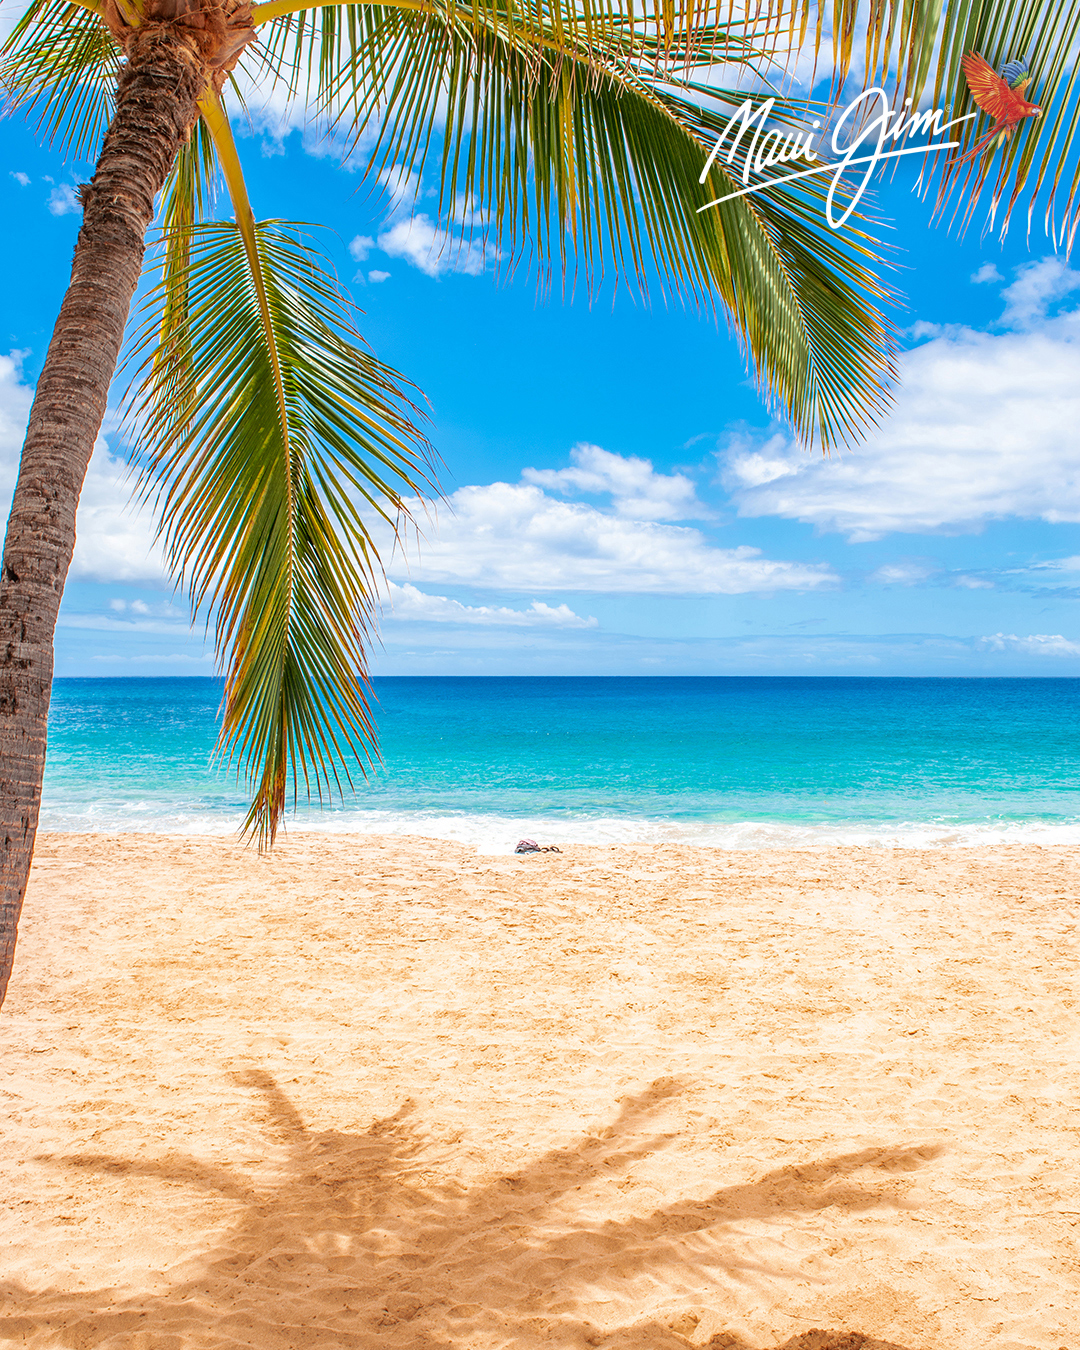 Maui Palm Tree on the Beach